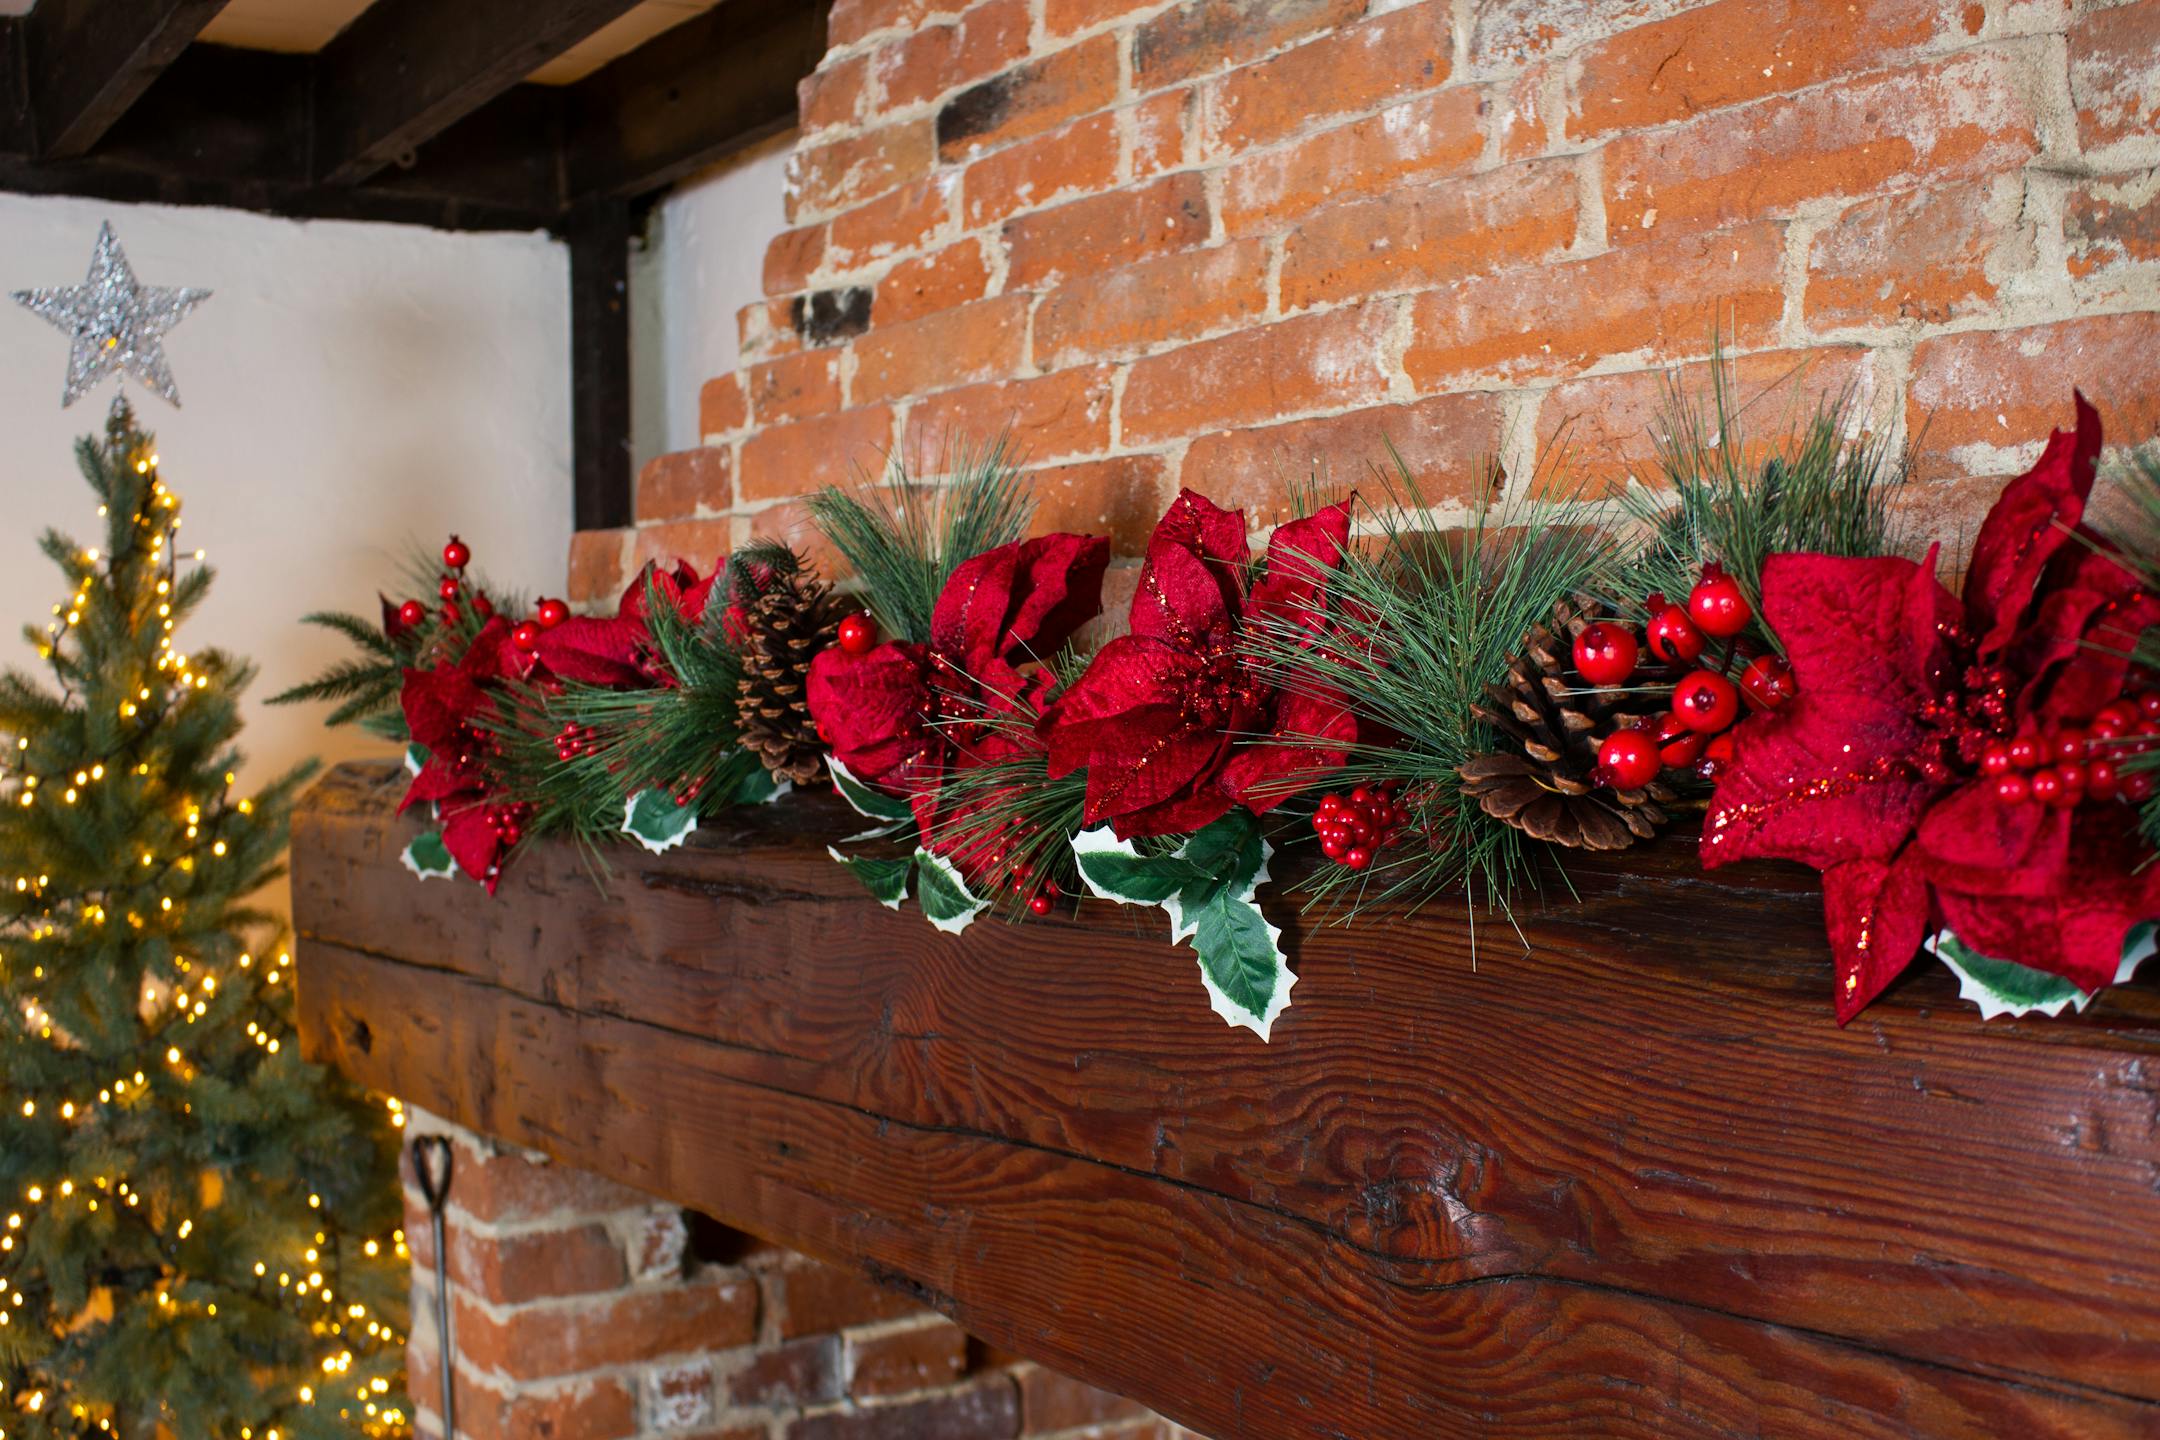 Artificial Christmas fiesta garland on wooden mantelpiece